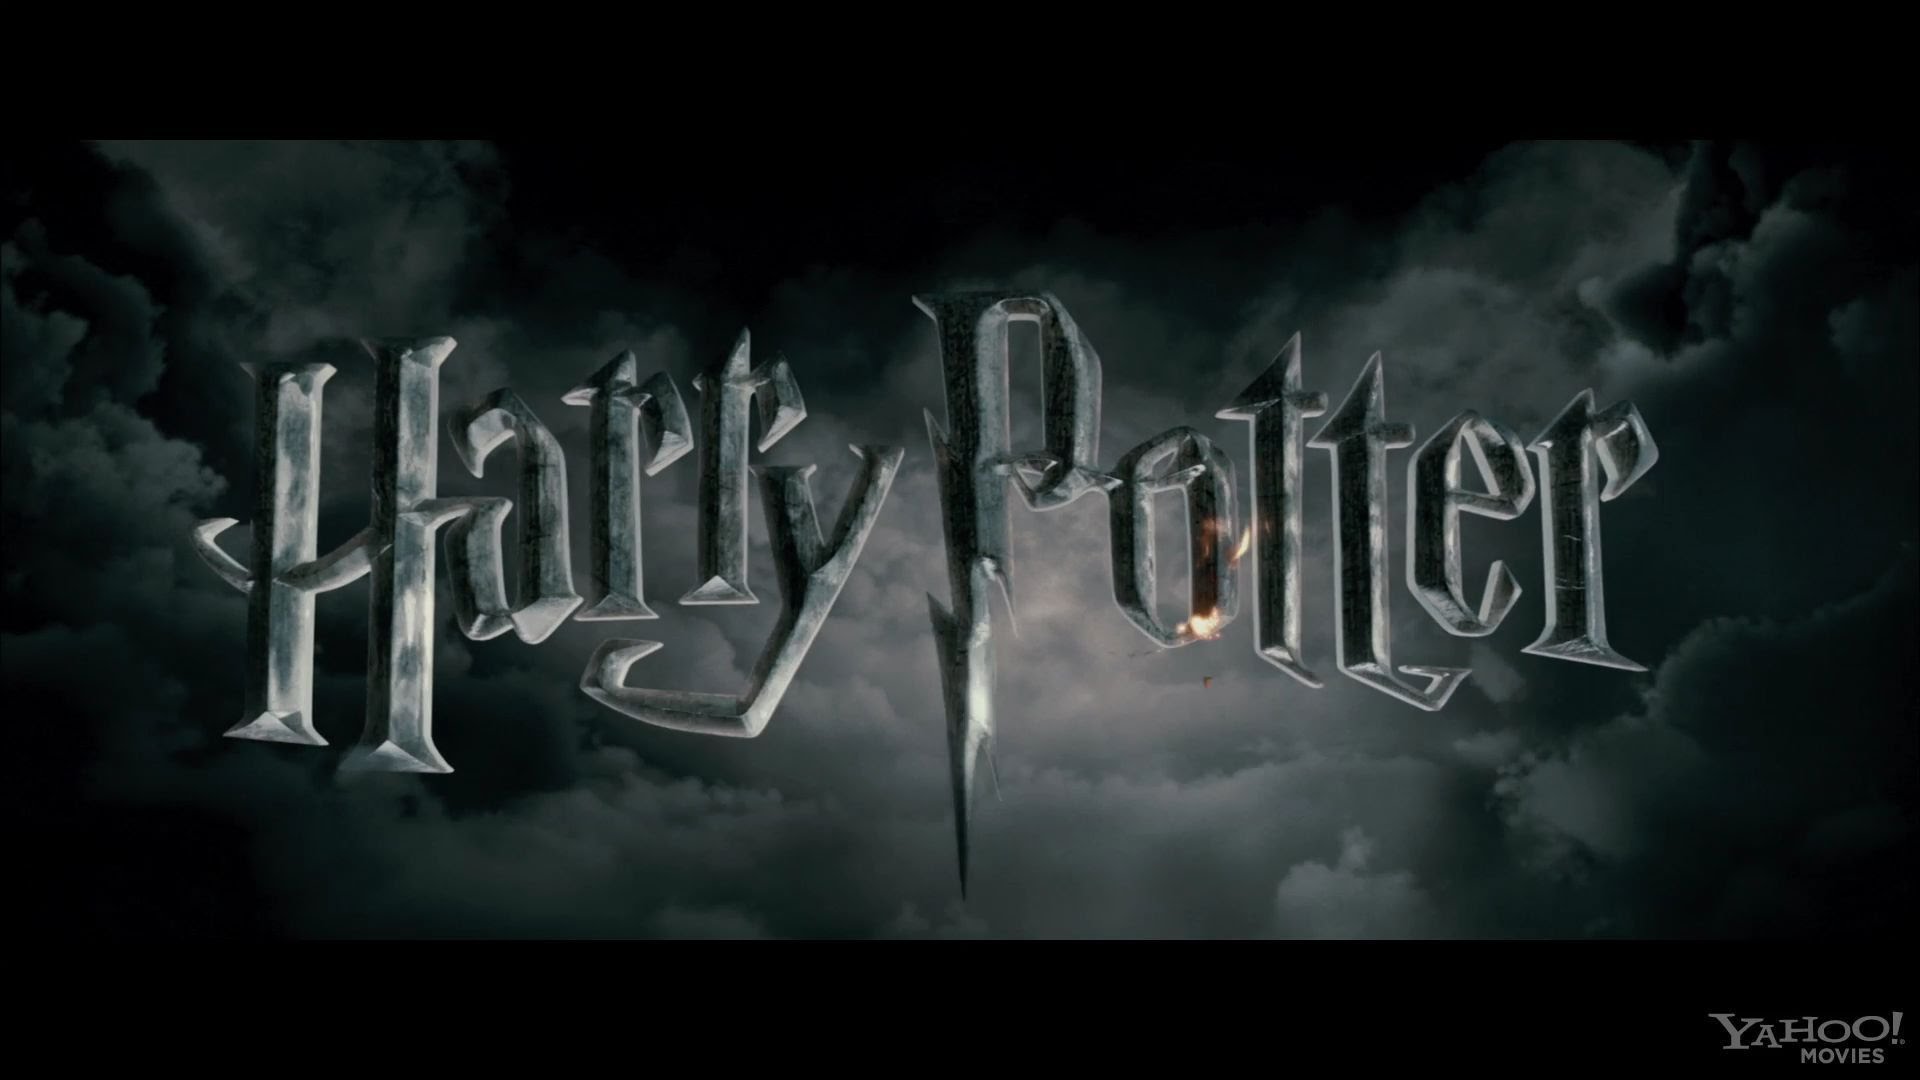 Czy rozpoznasz postacie z filmu ,,Harry Potter”? Sprawdź!